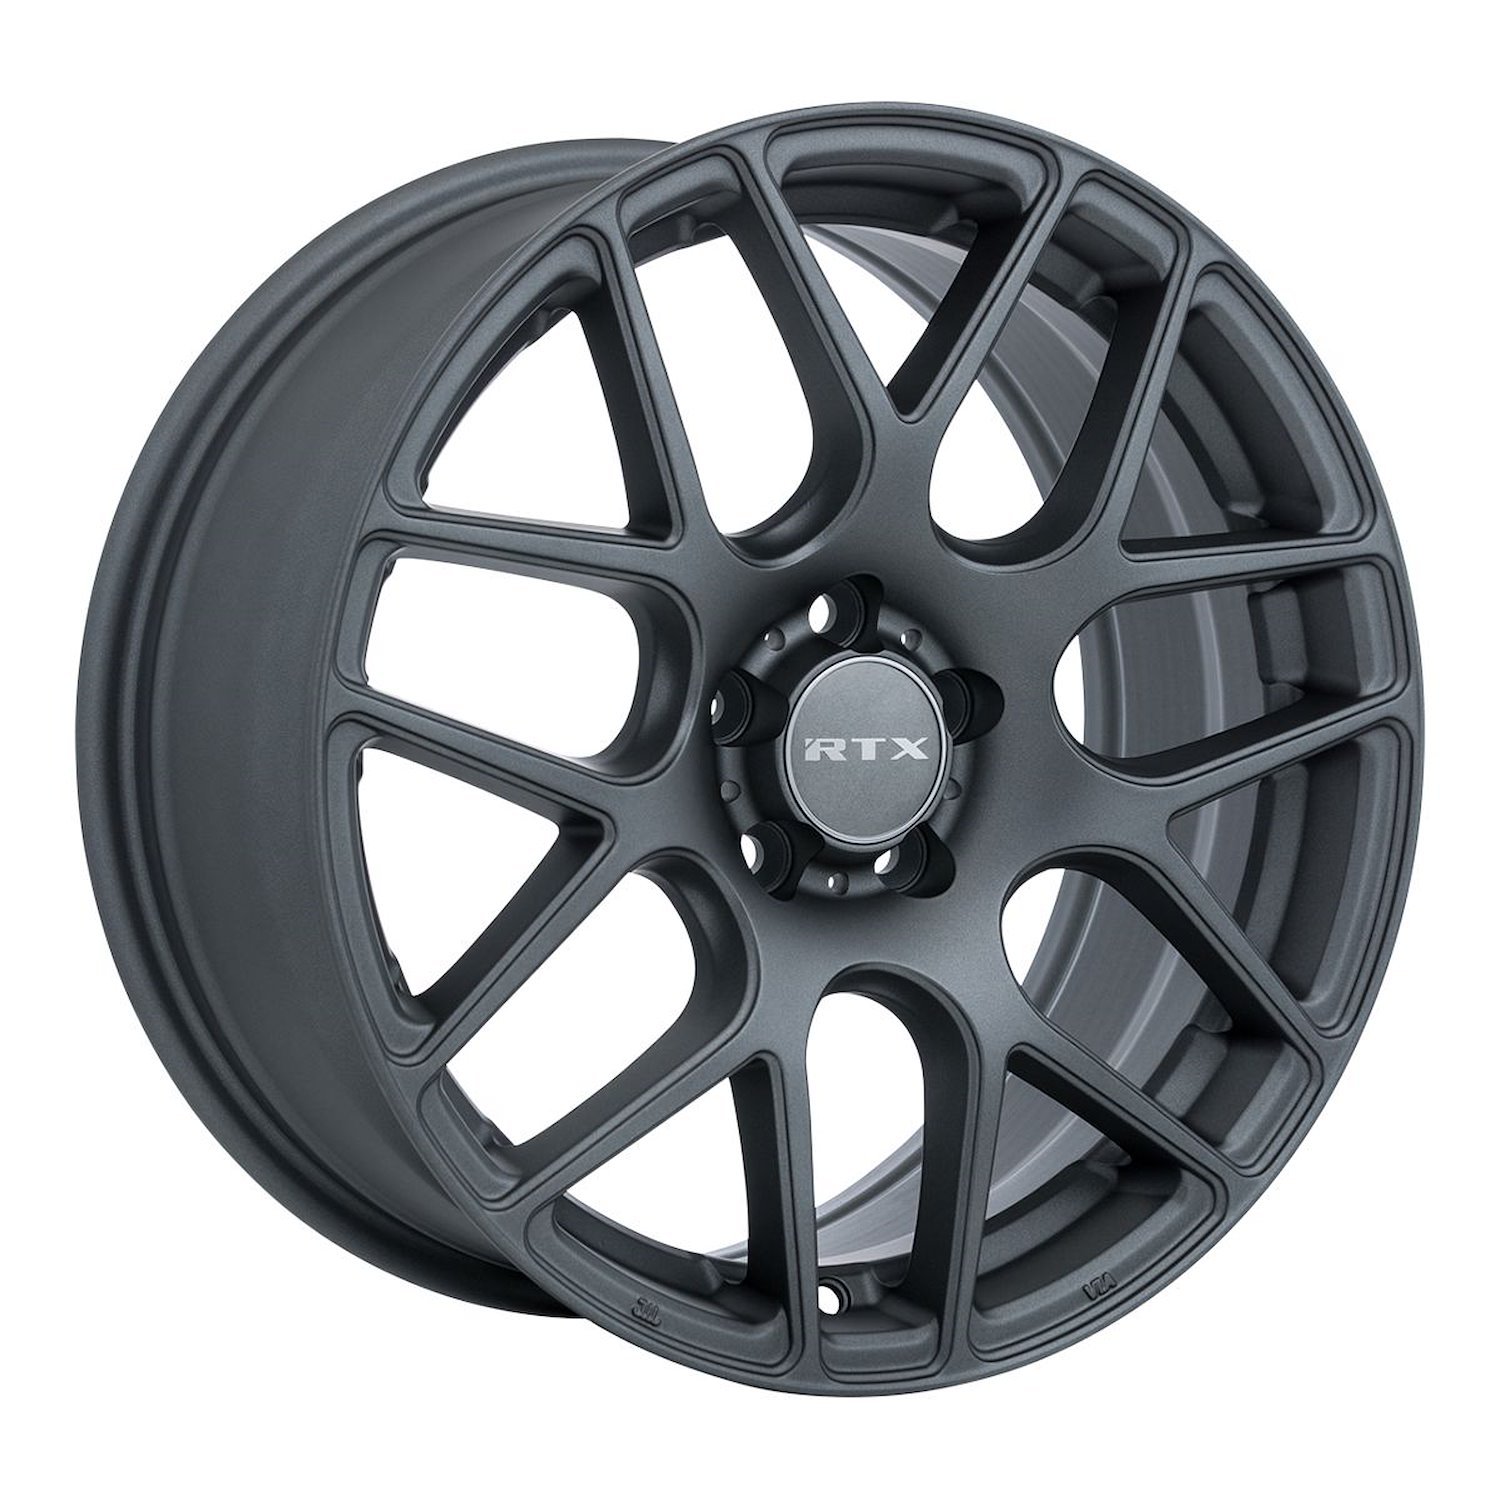 082778 RTX-Series Envy Wheel [Size: 18" x 8"] Matte Gunmetal Finish